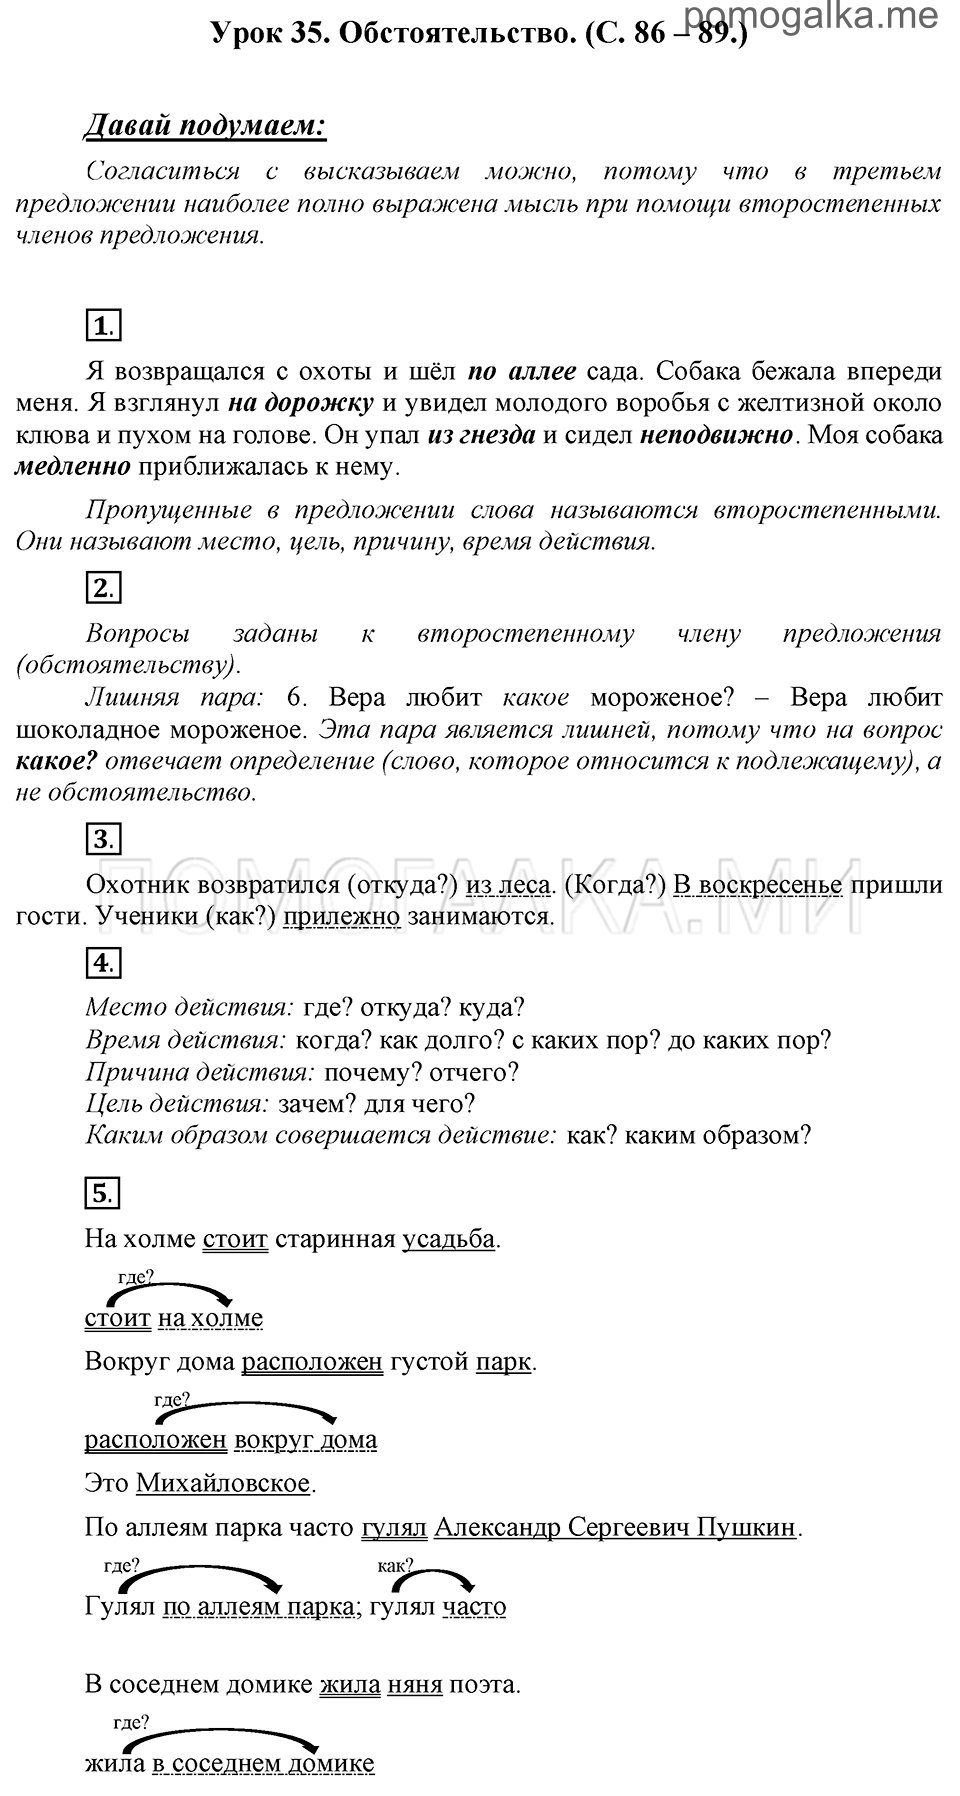 часть 1 страницы 86-89 урок 35 русский язык 3 класс Иванов, Евдокимова, Кузнецова